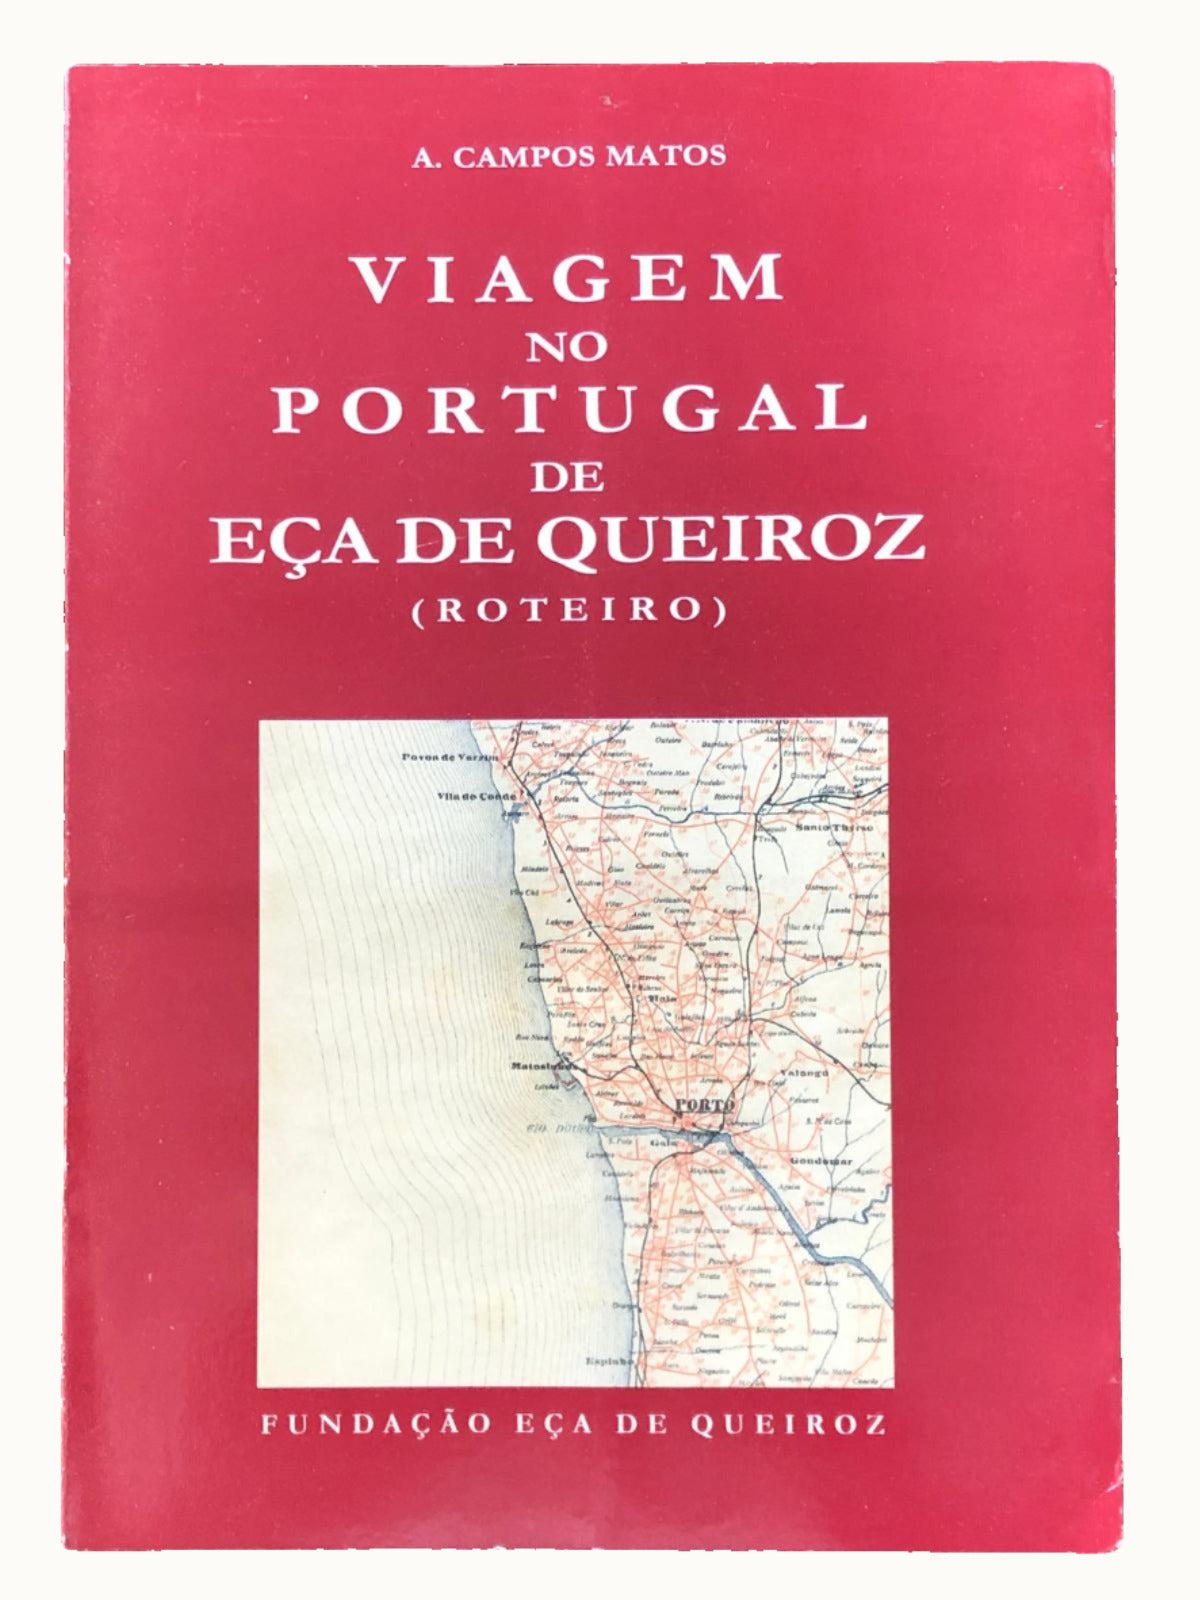 Viagem no Portugal de Eça de Queiroz (Roteiro)